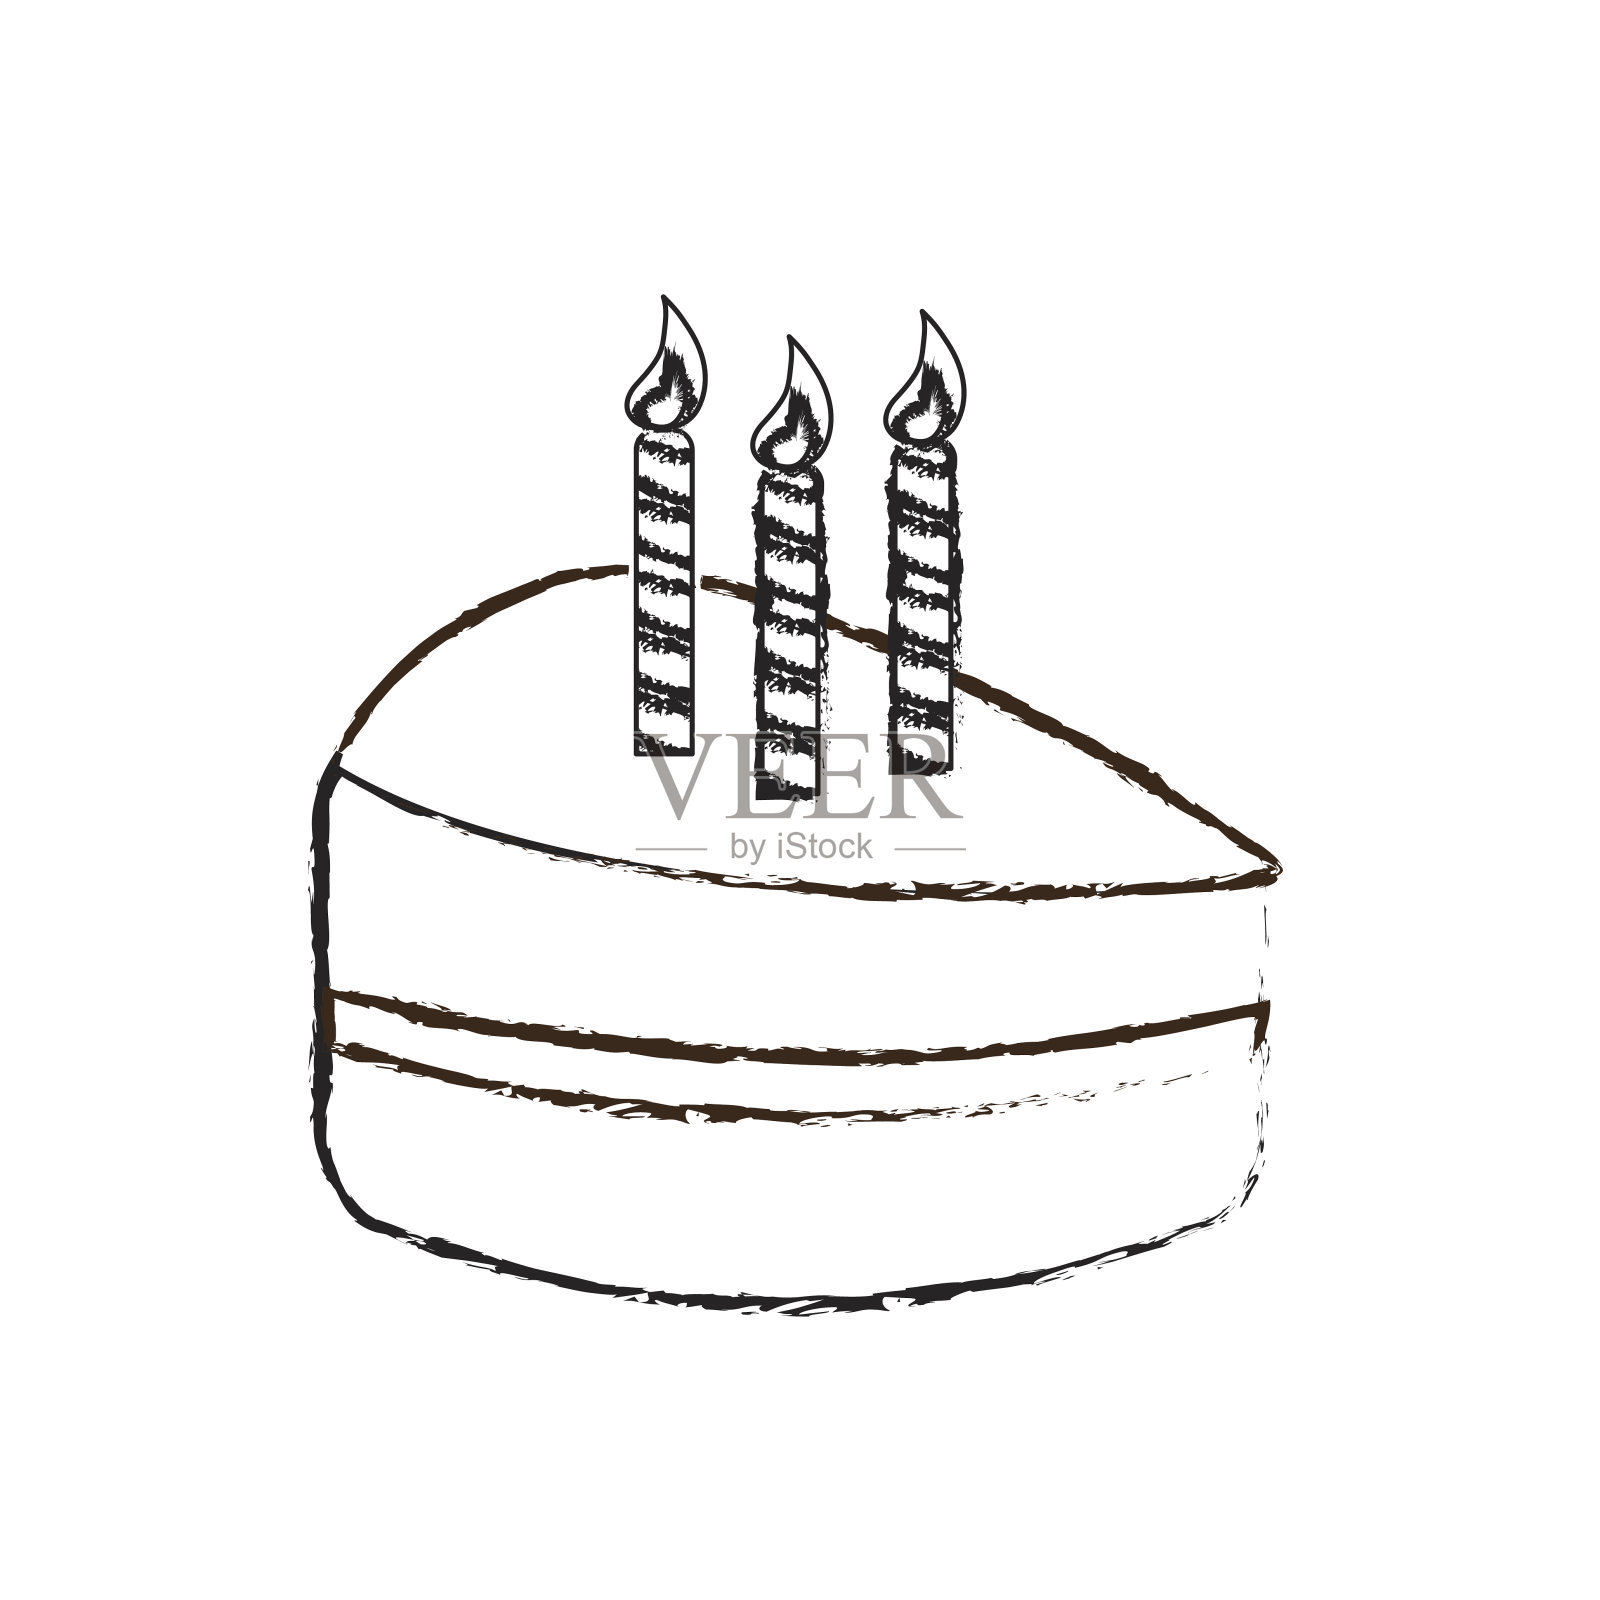 用美味的蜡笔画上蜡烛祝你生日快乐插画图片素材